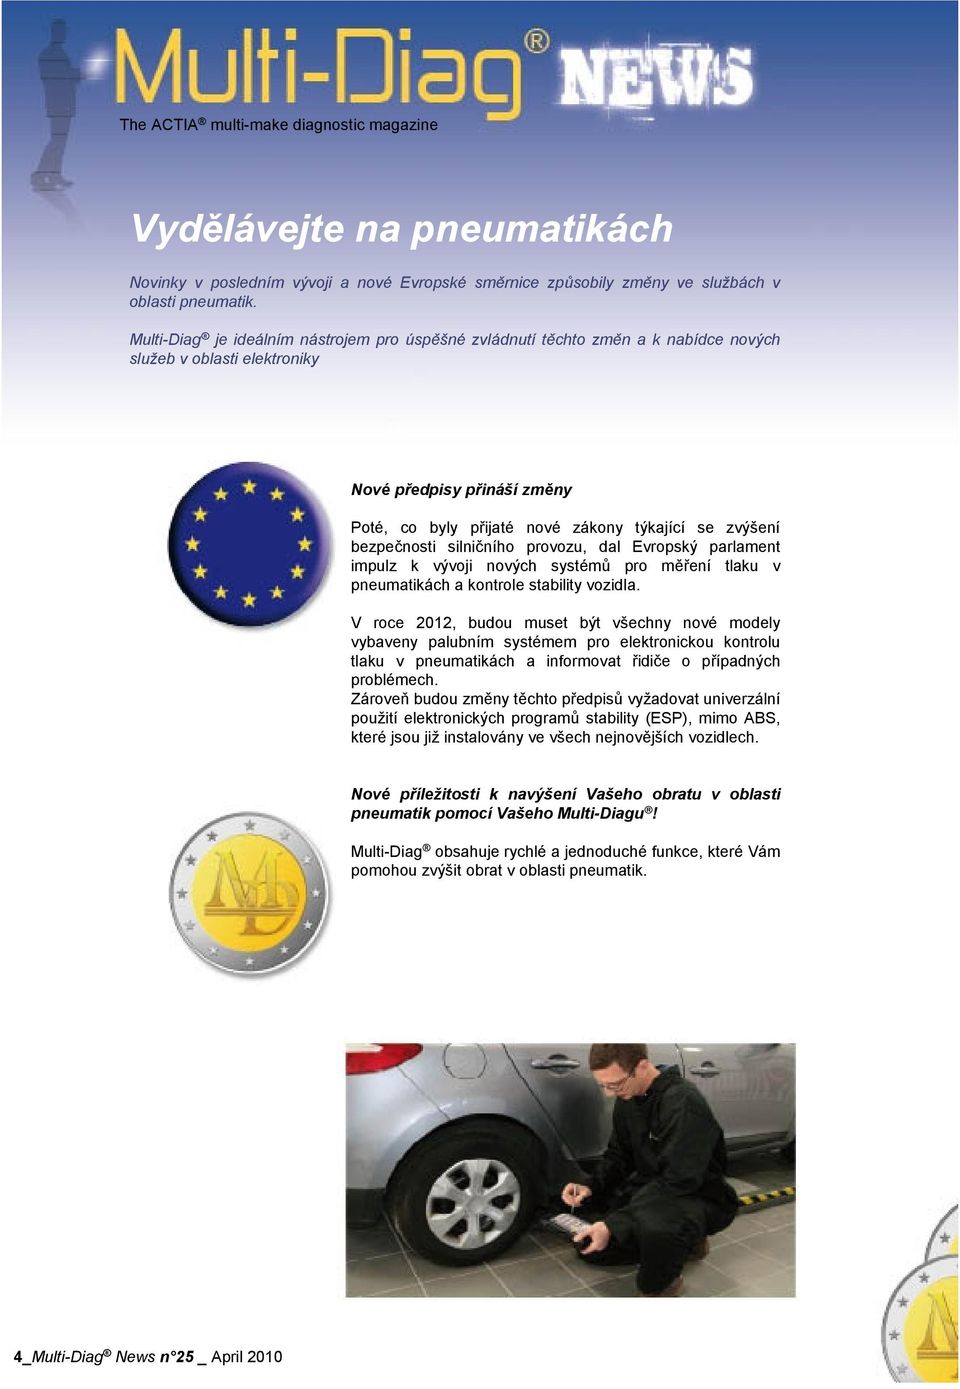 bezpečnosti silničního provozu, dal Evropský parlament impulz k vývoji nových systémů pro měření tlaku v pneumatikách a kontrole stability vozidla.